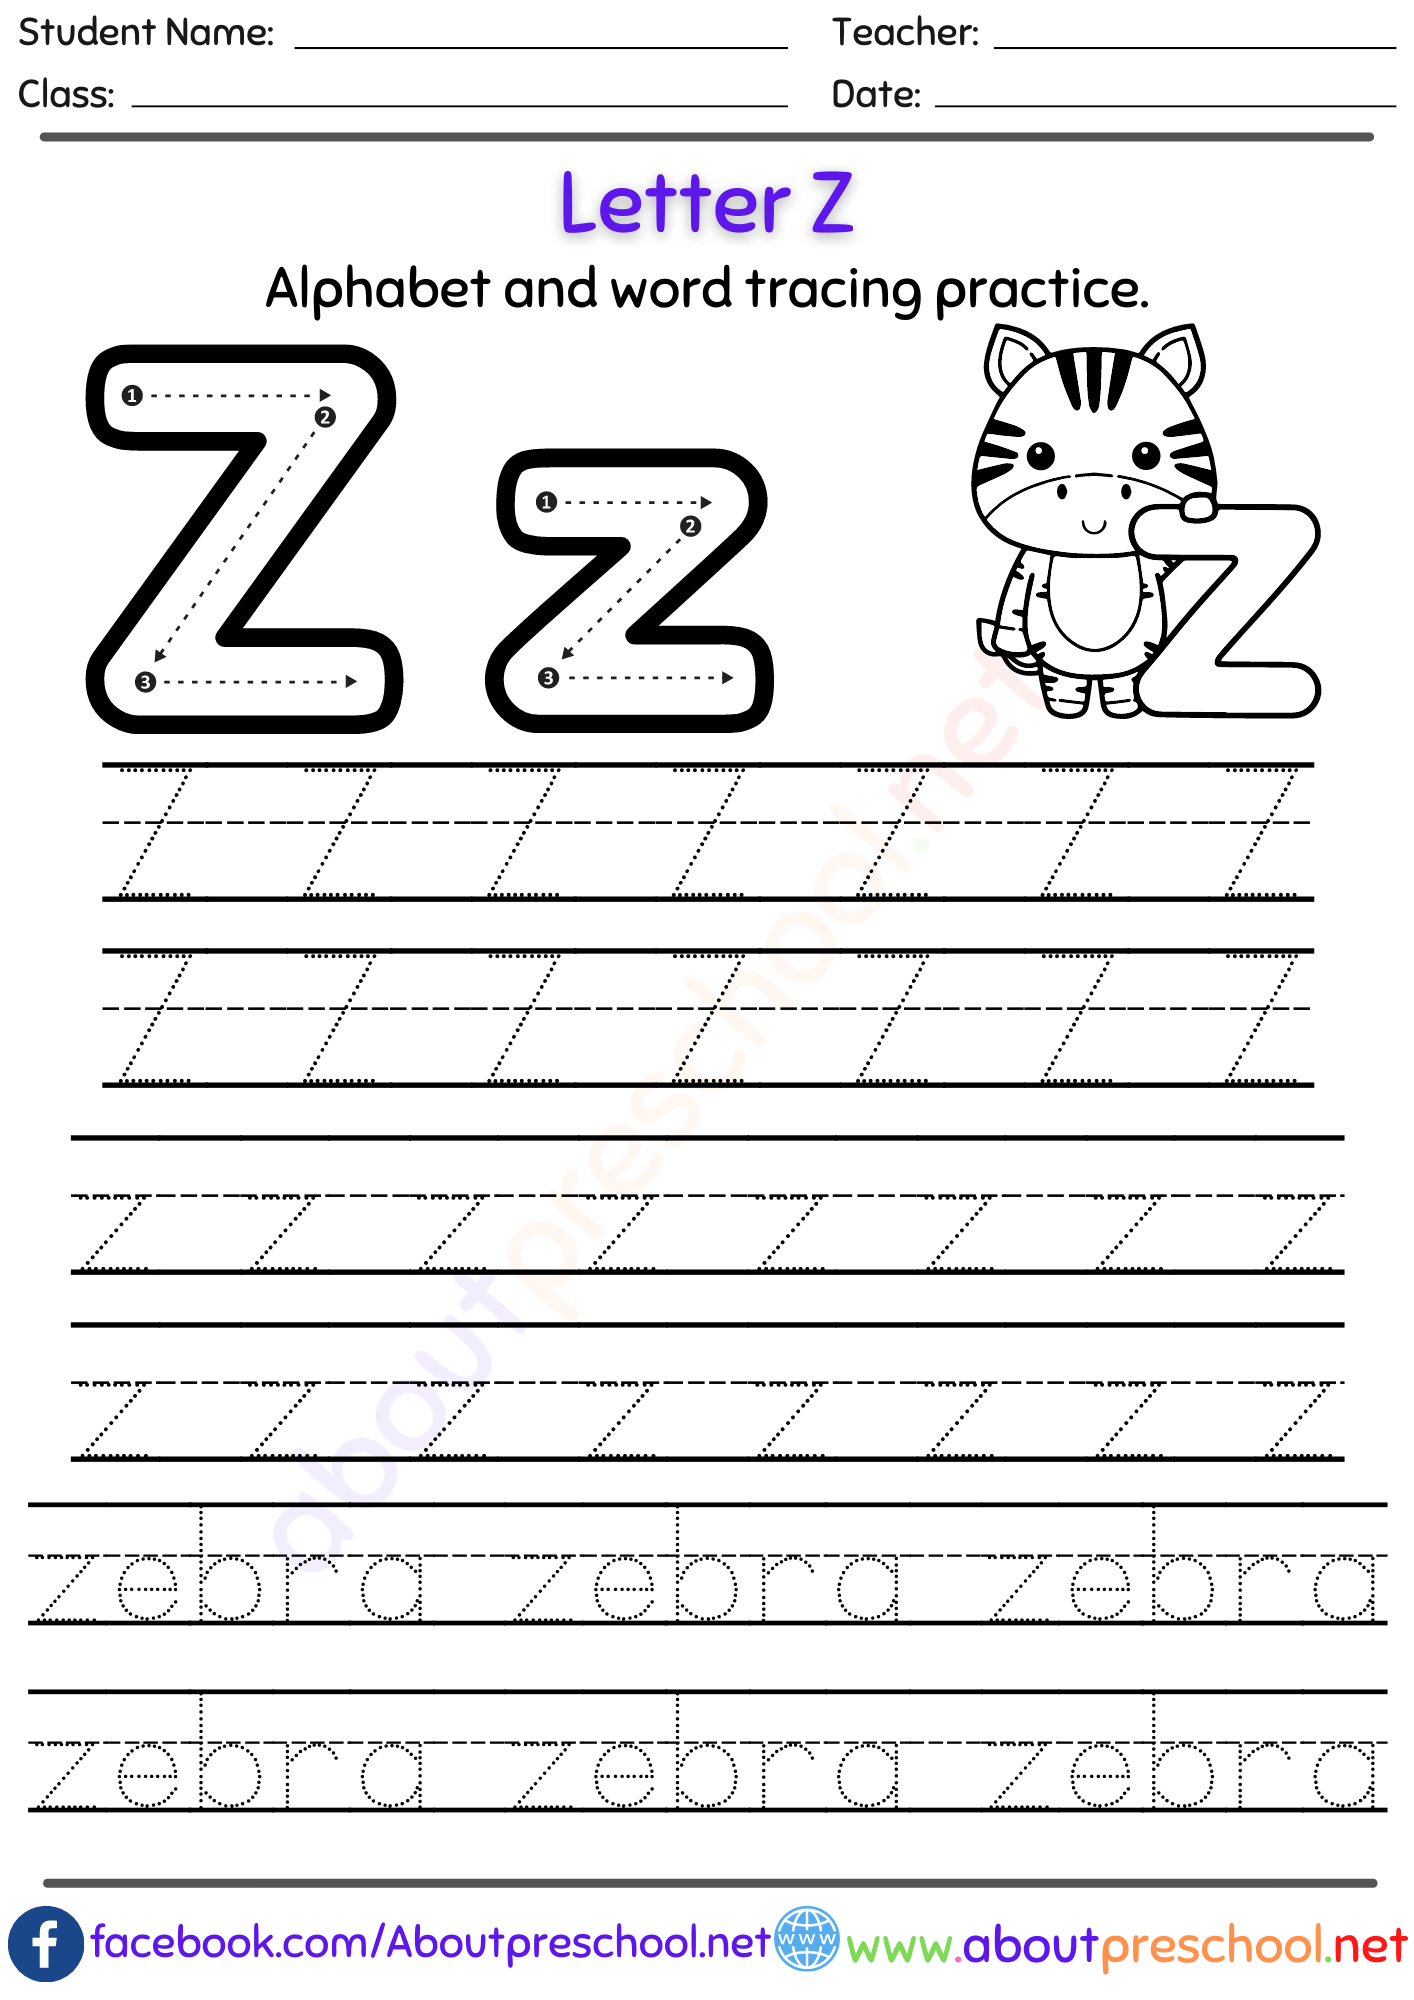 Letter Z Alphabet tracing worksheets